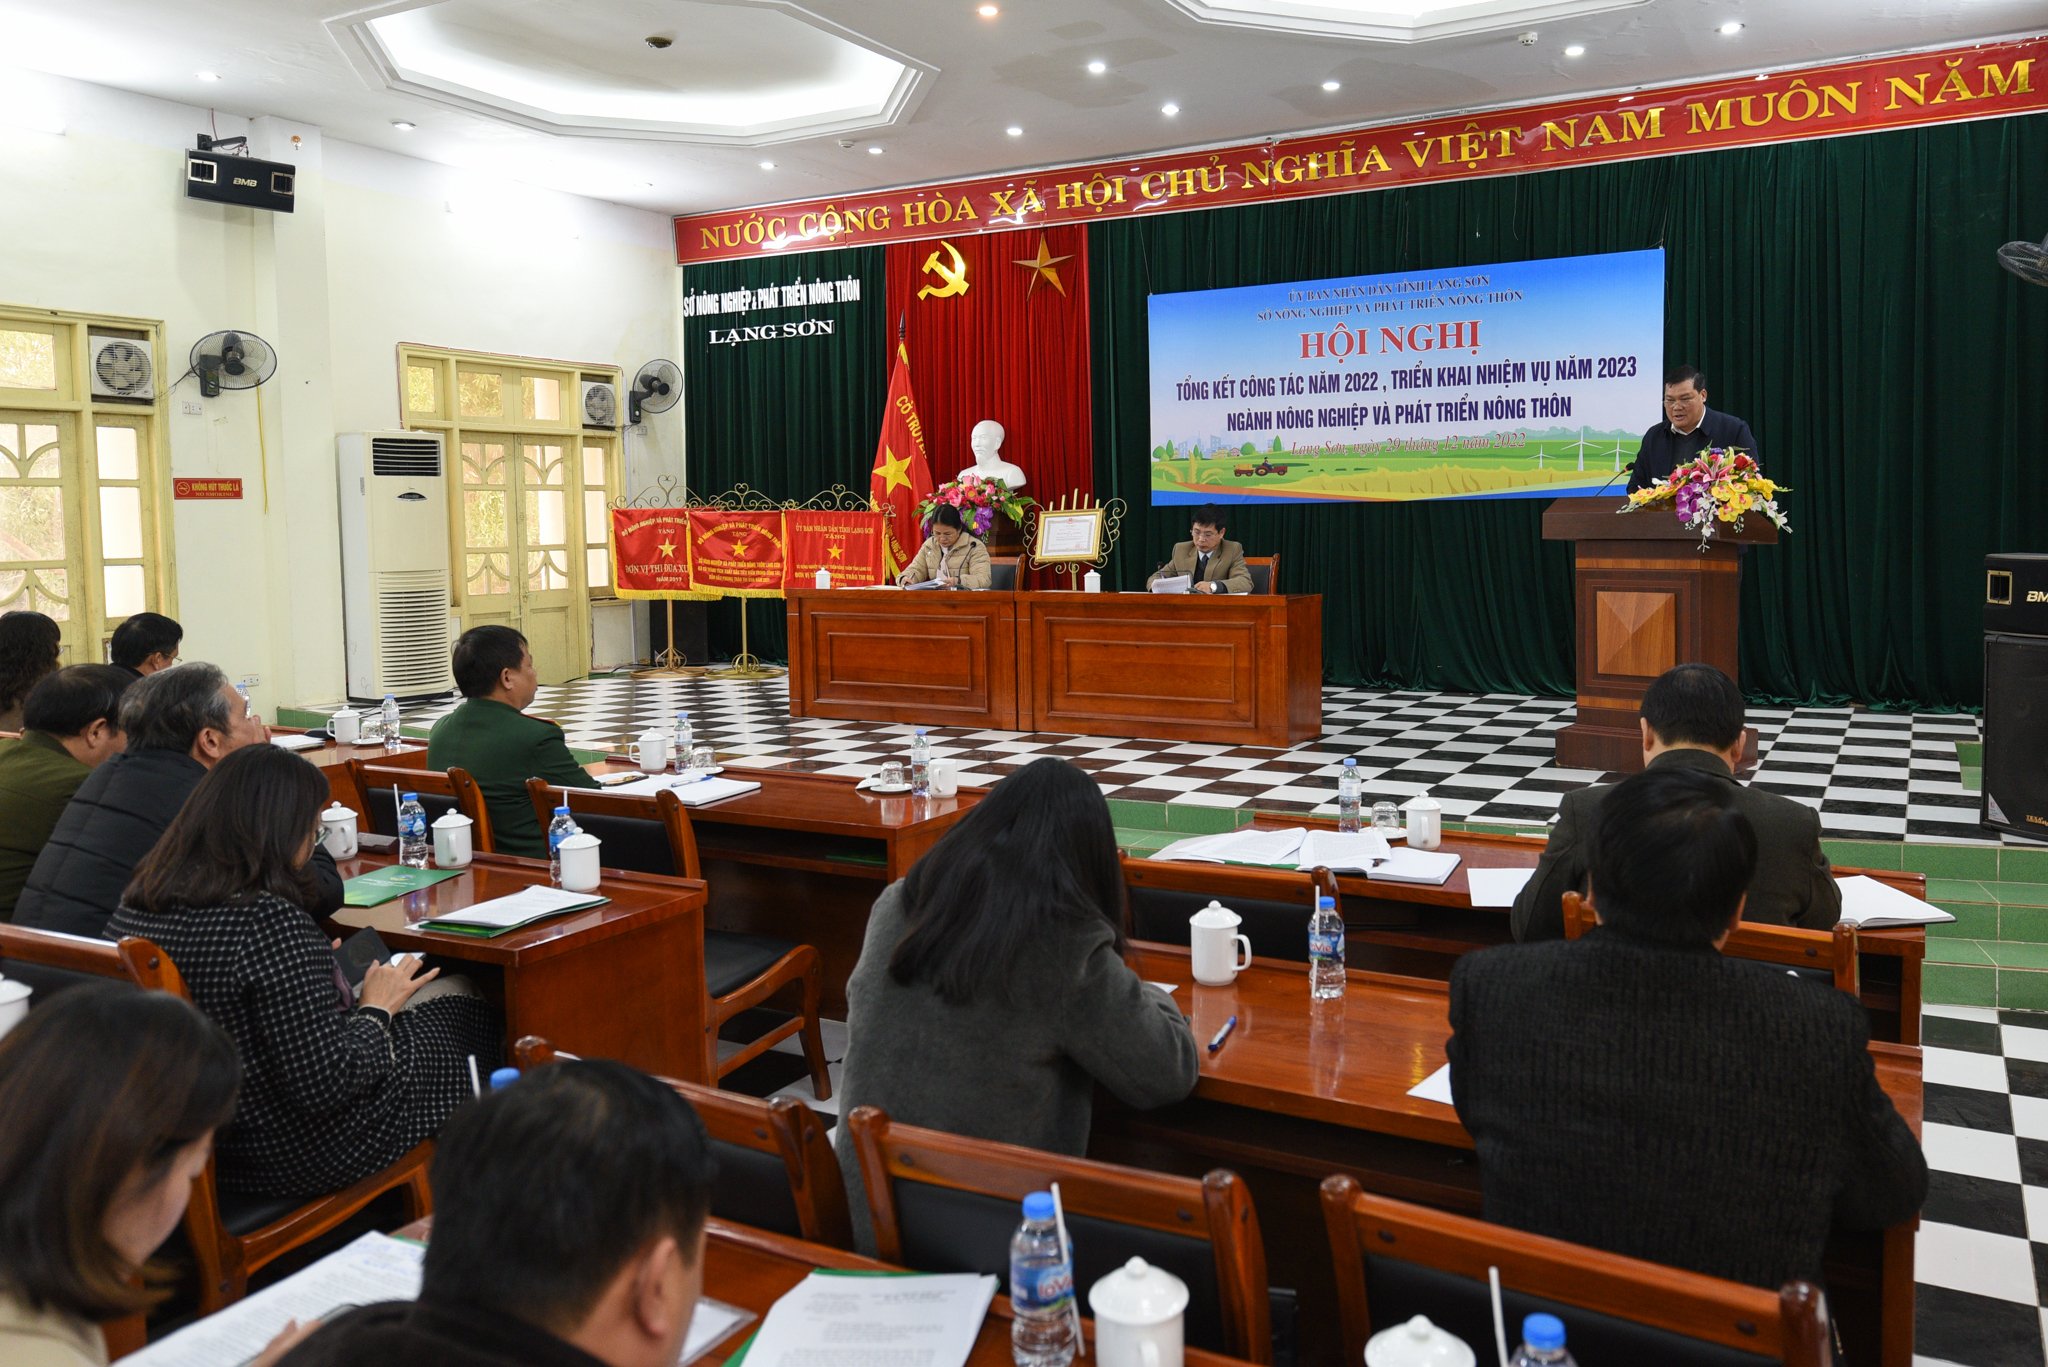 Sở NN-PTNT Lạng Sơn tổng kết hoạt động năm 2022, triển khai các nhiệm vụ của ngành cho năm 2023. Ảnh: Tùng Đinh.